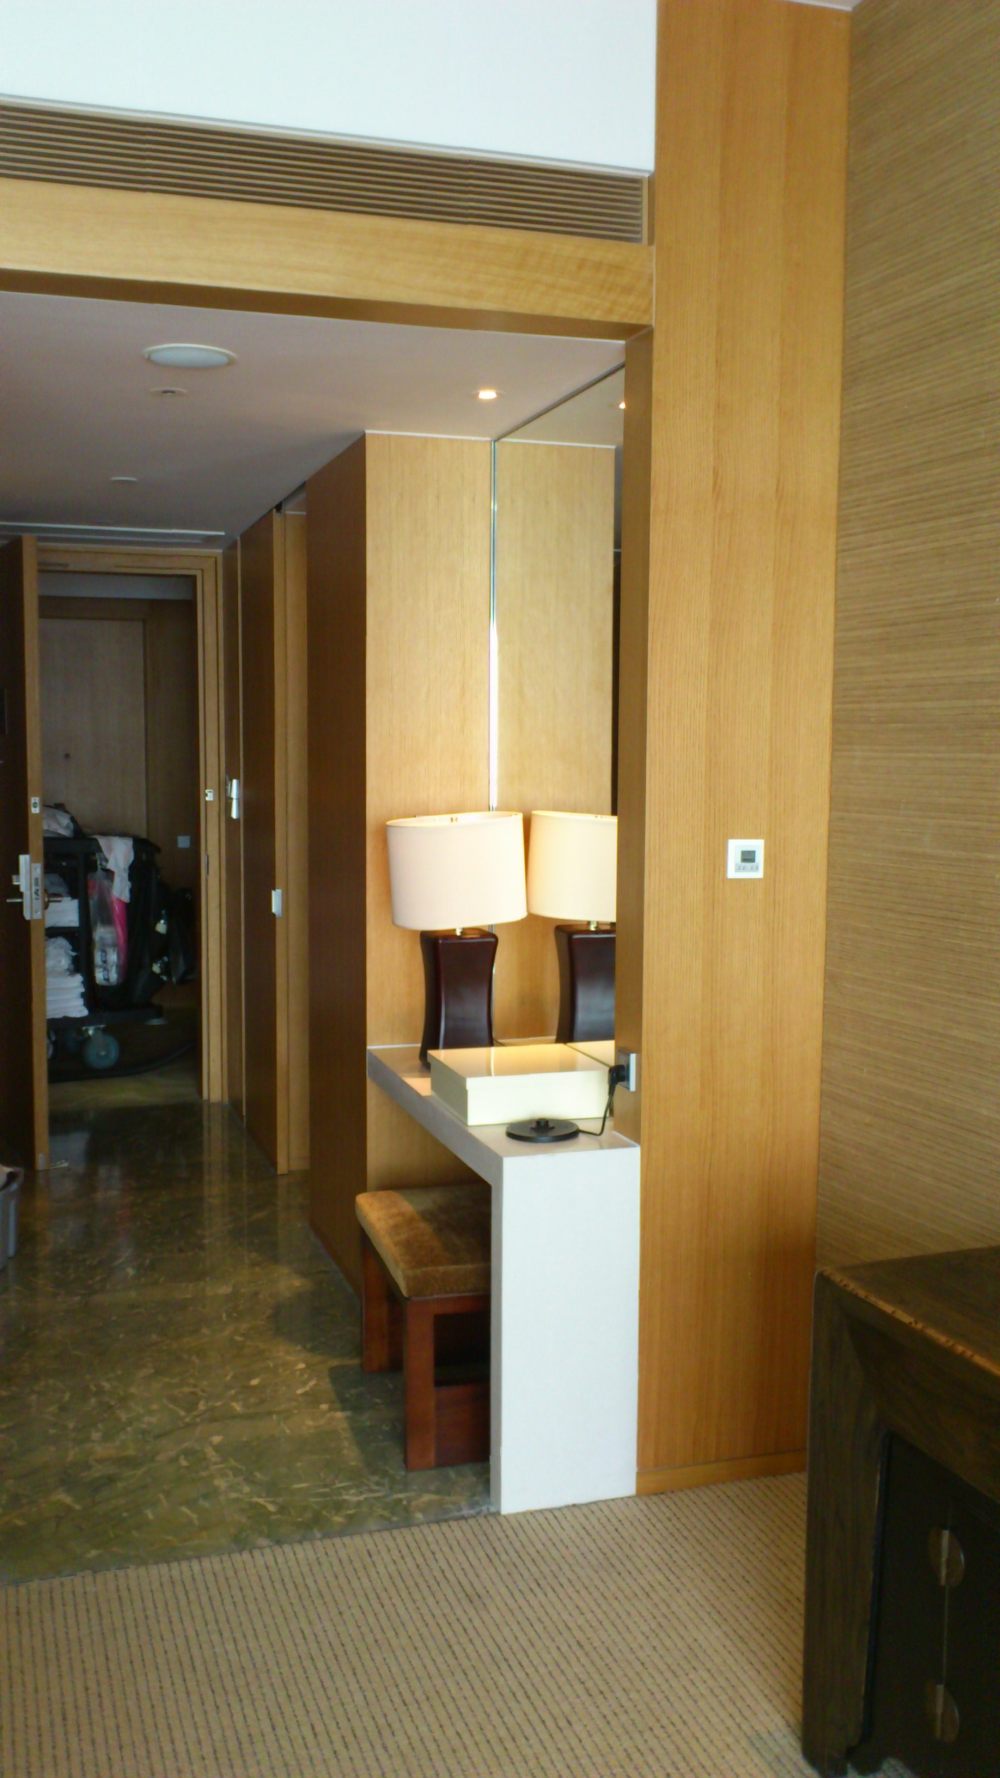 苏州晋合洲际Intercontinental酒店--2012.06.24第八页更新客房_DSC_1280.JPG